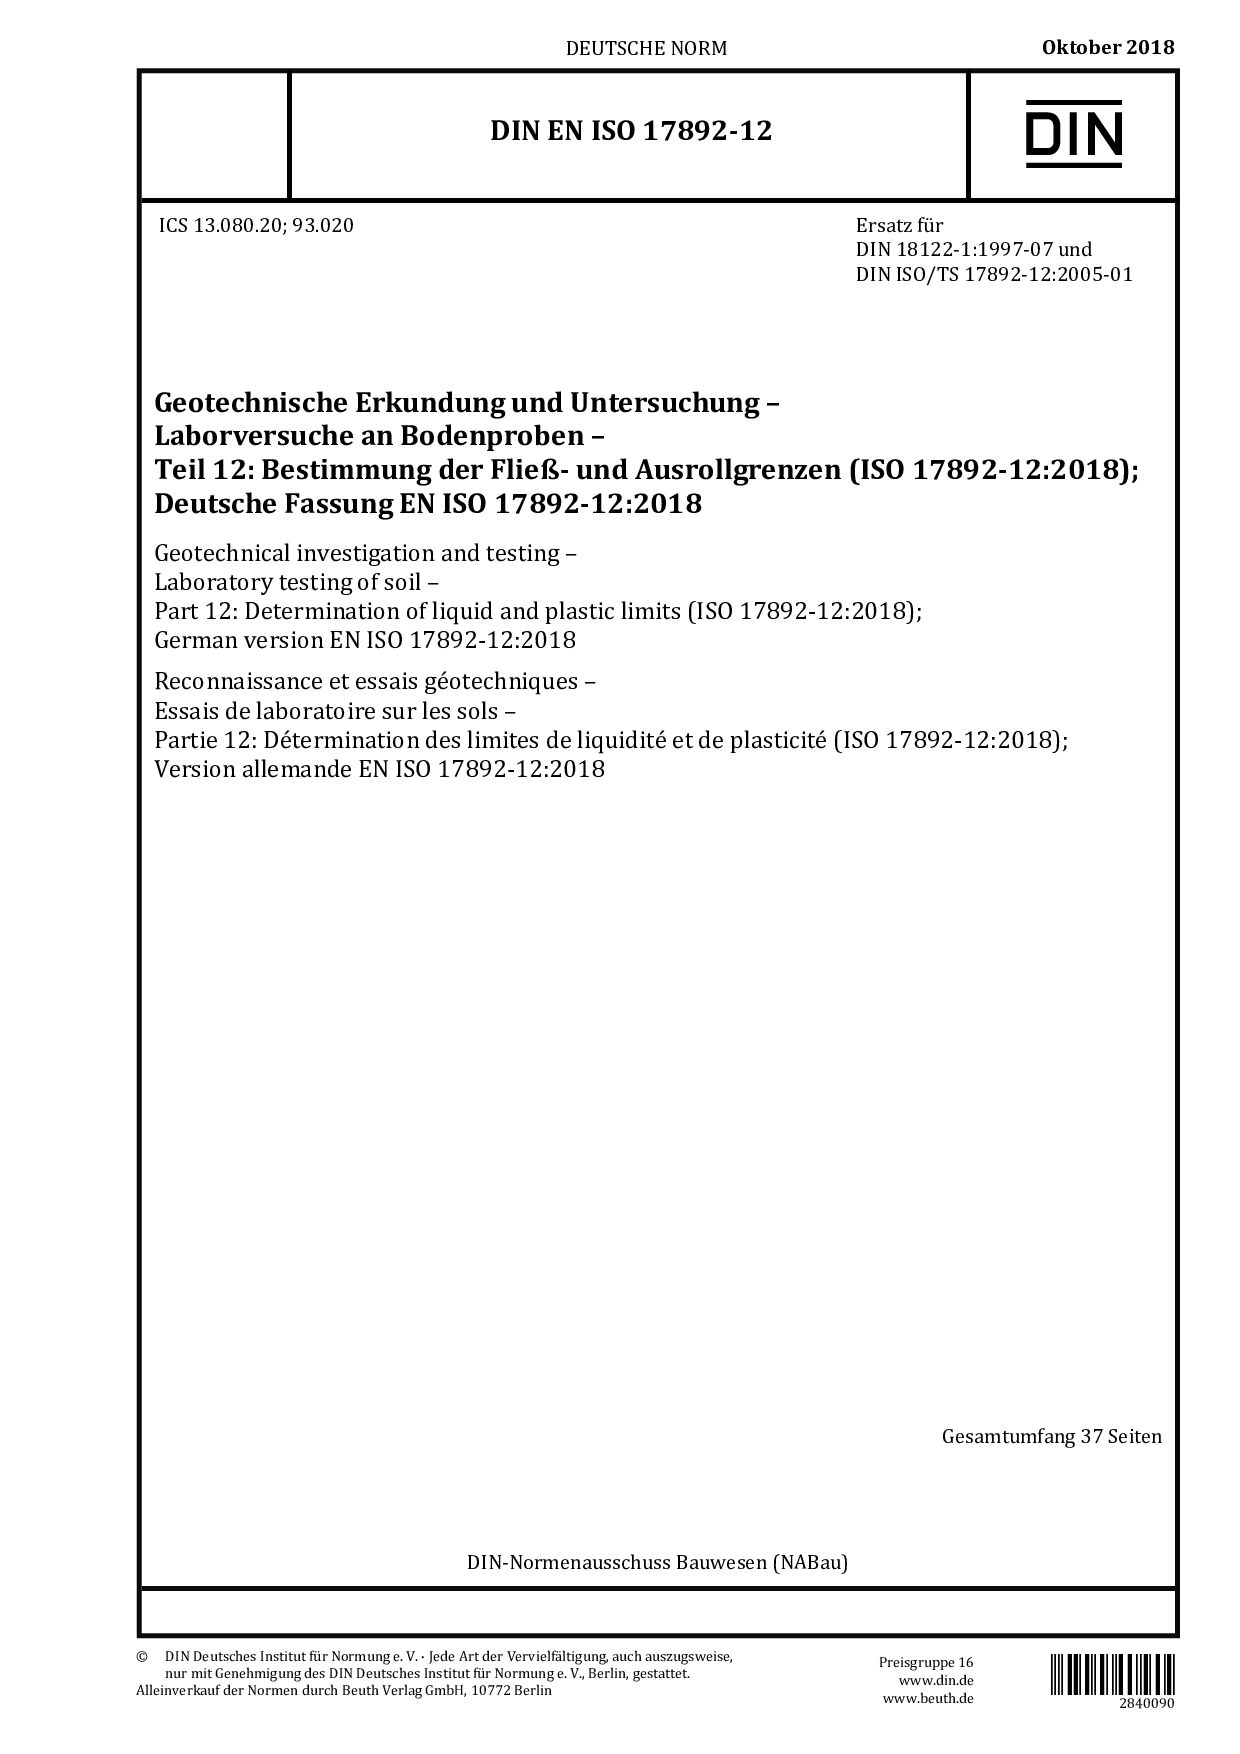 DIN EN ISO 17892-12:2018